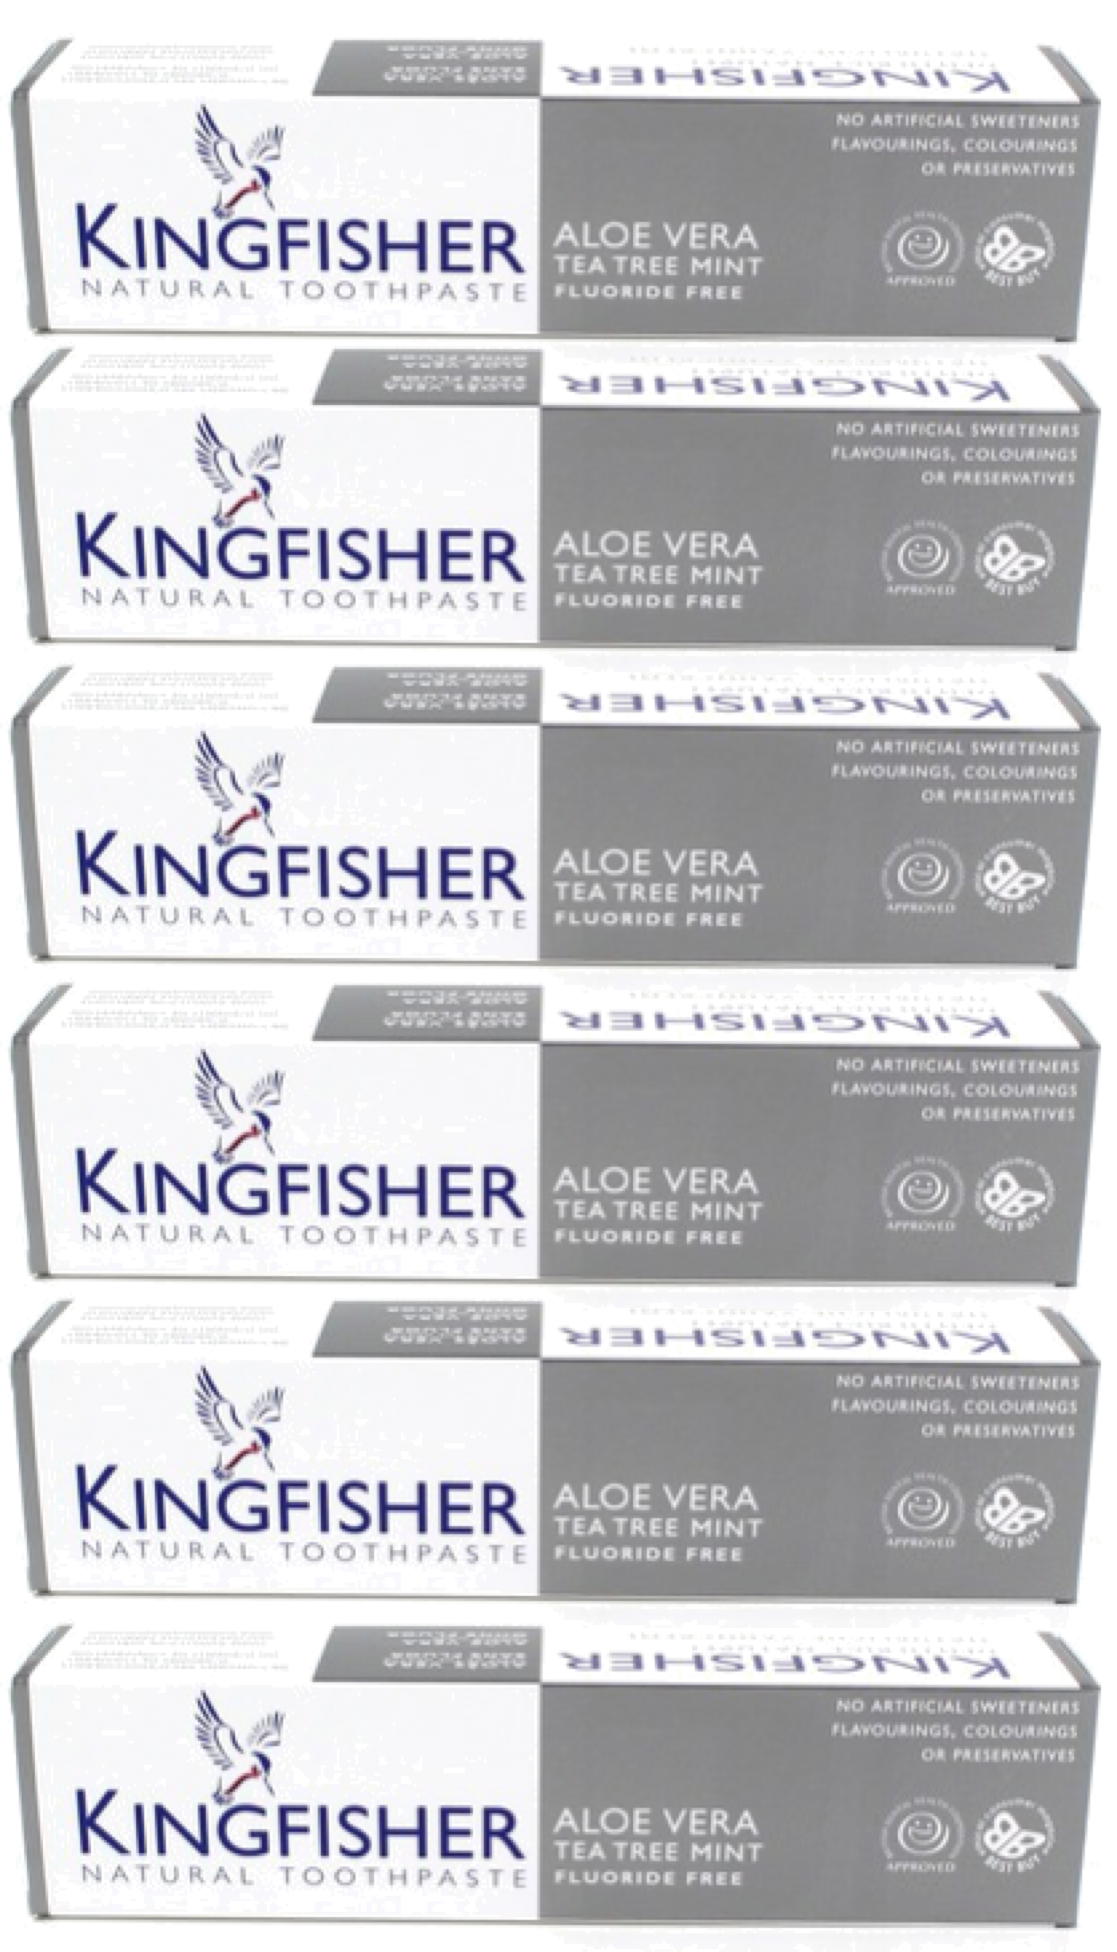 Kingfisher Toothpaste - Aloe Vera Tea Tree Mint Fluoride Free Toothpaste (100ml) - Pack of 6